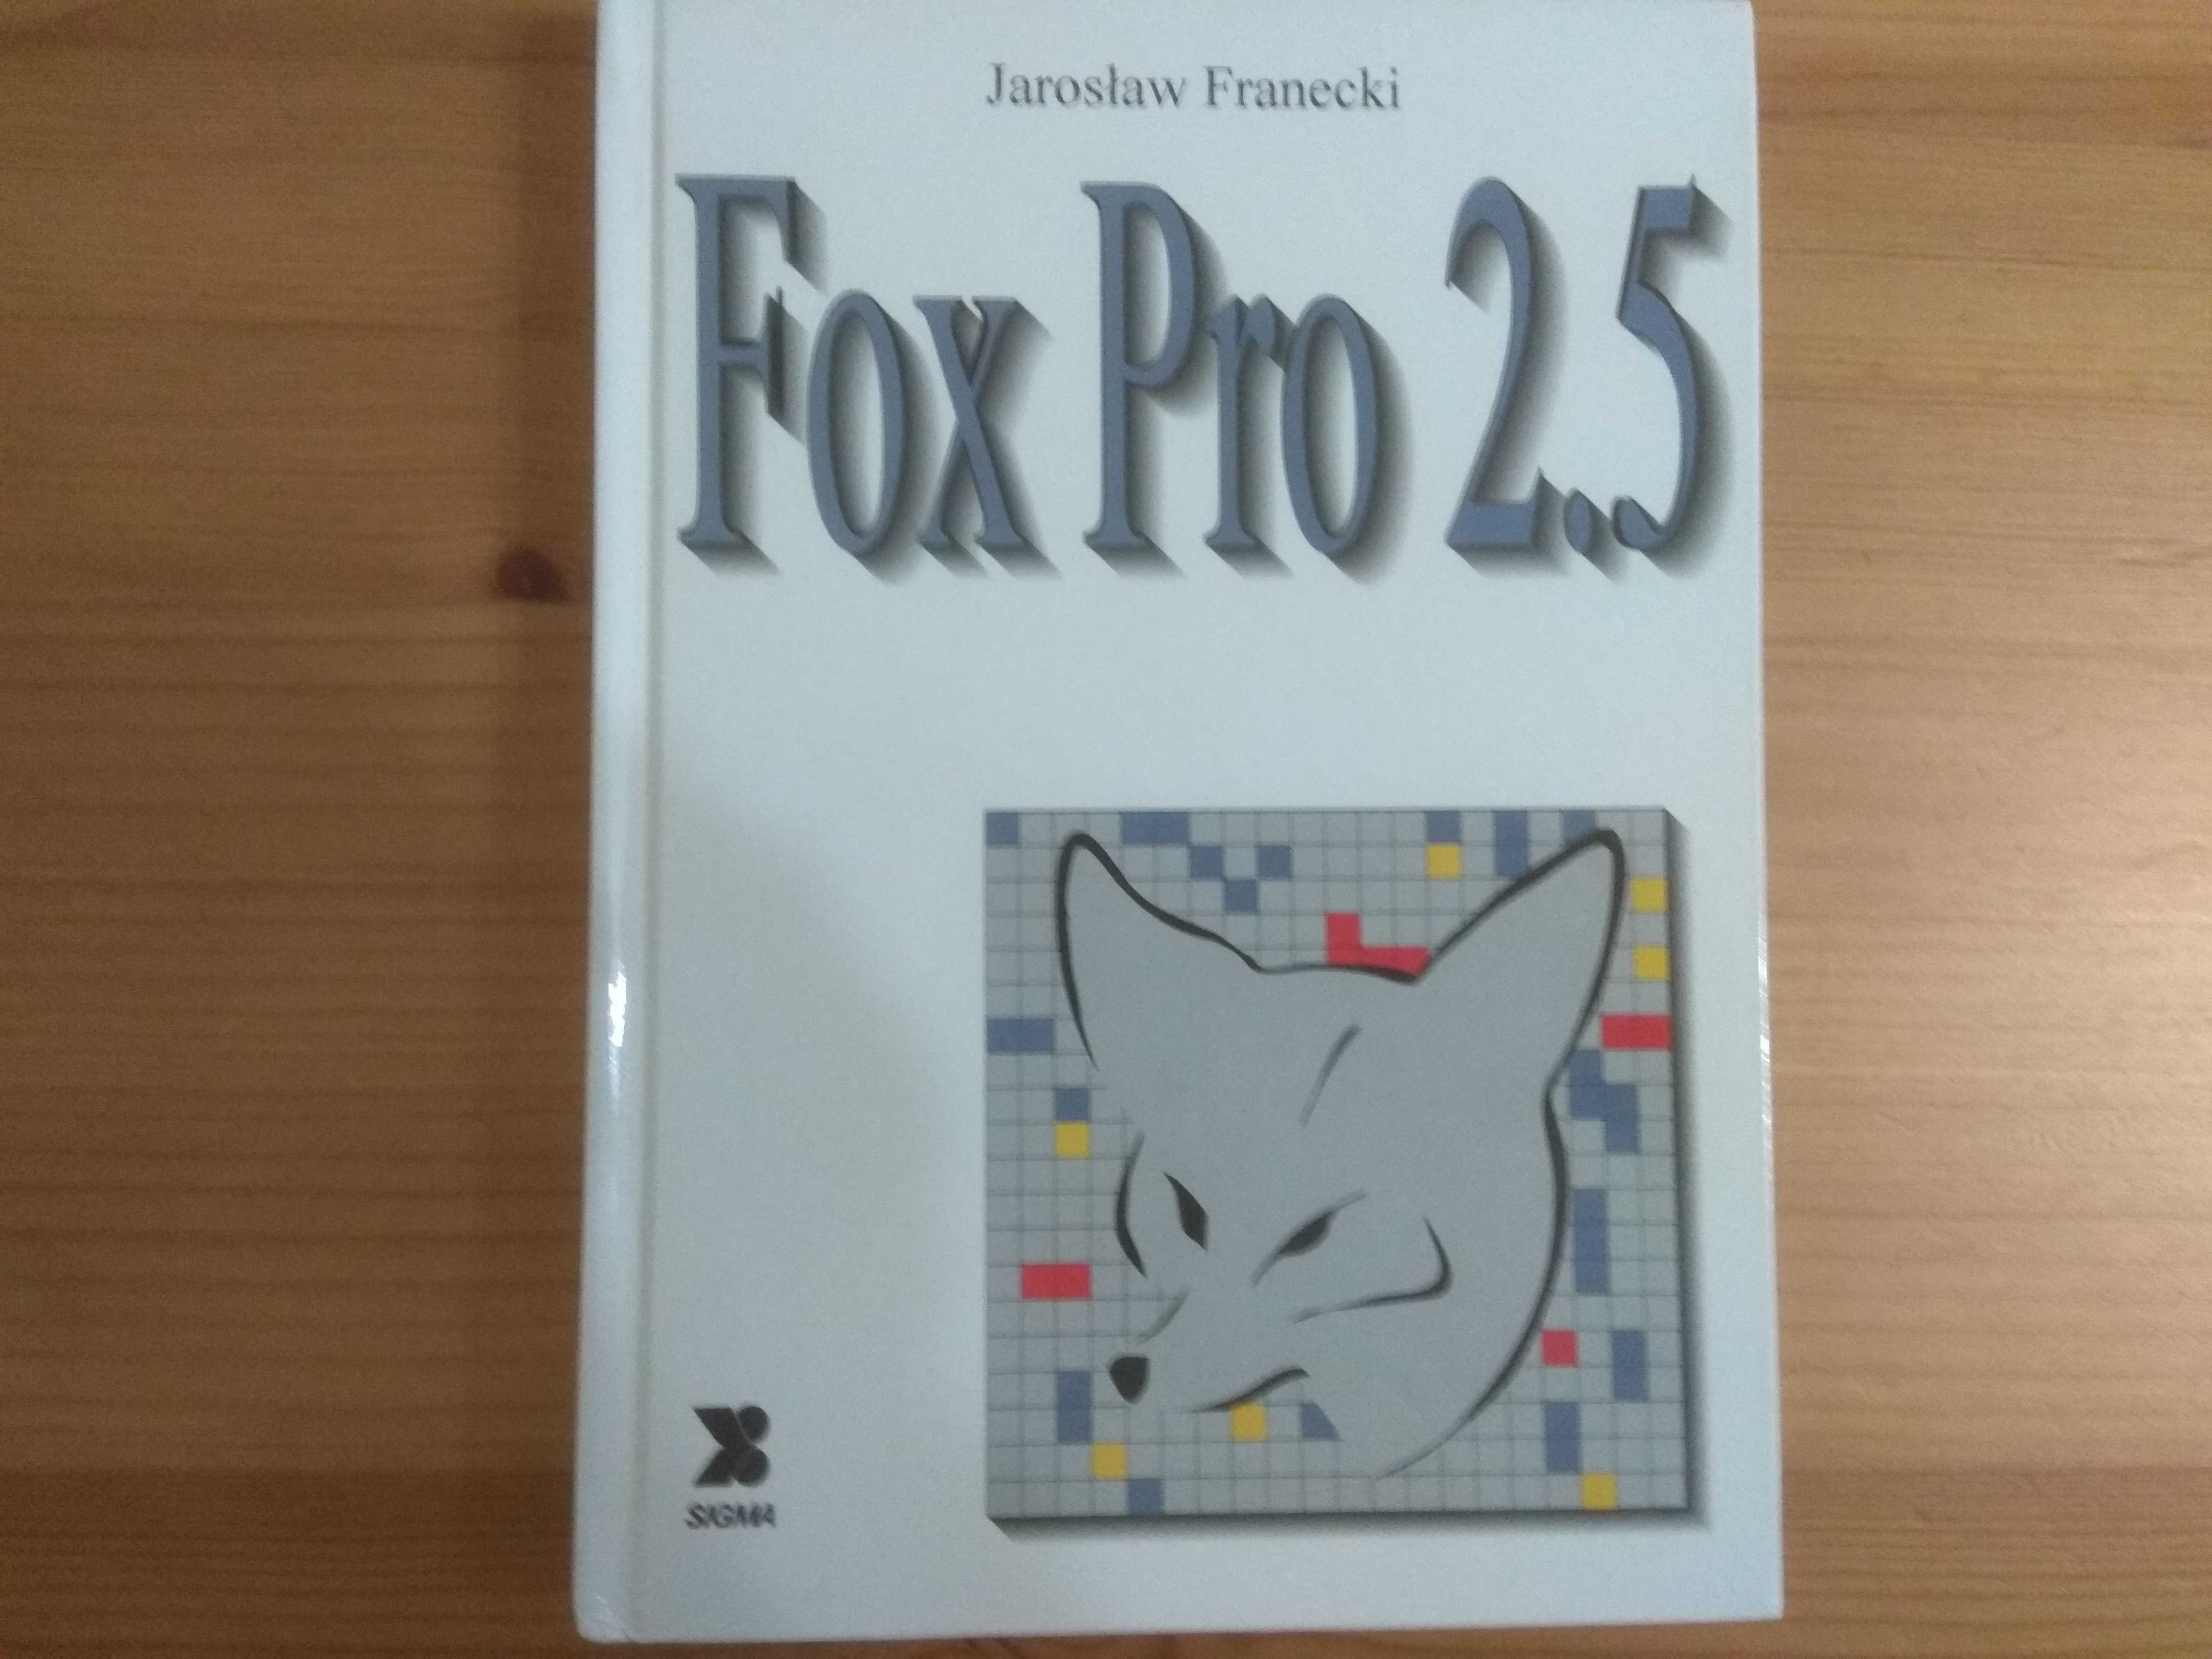 Fox Pro 2.5 Jarosław Franecki